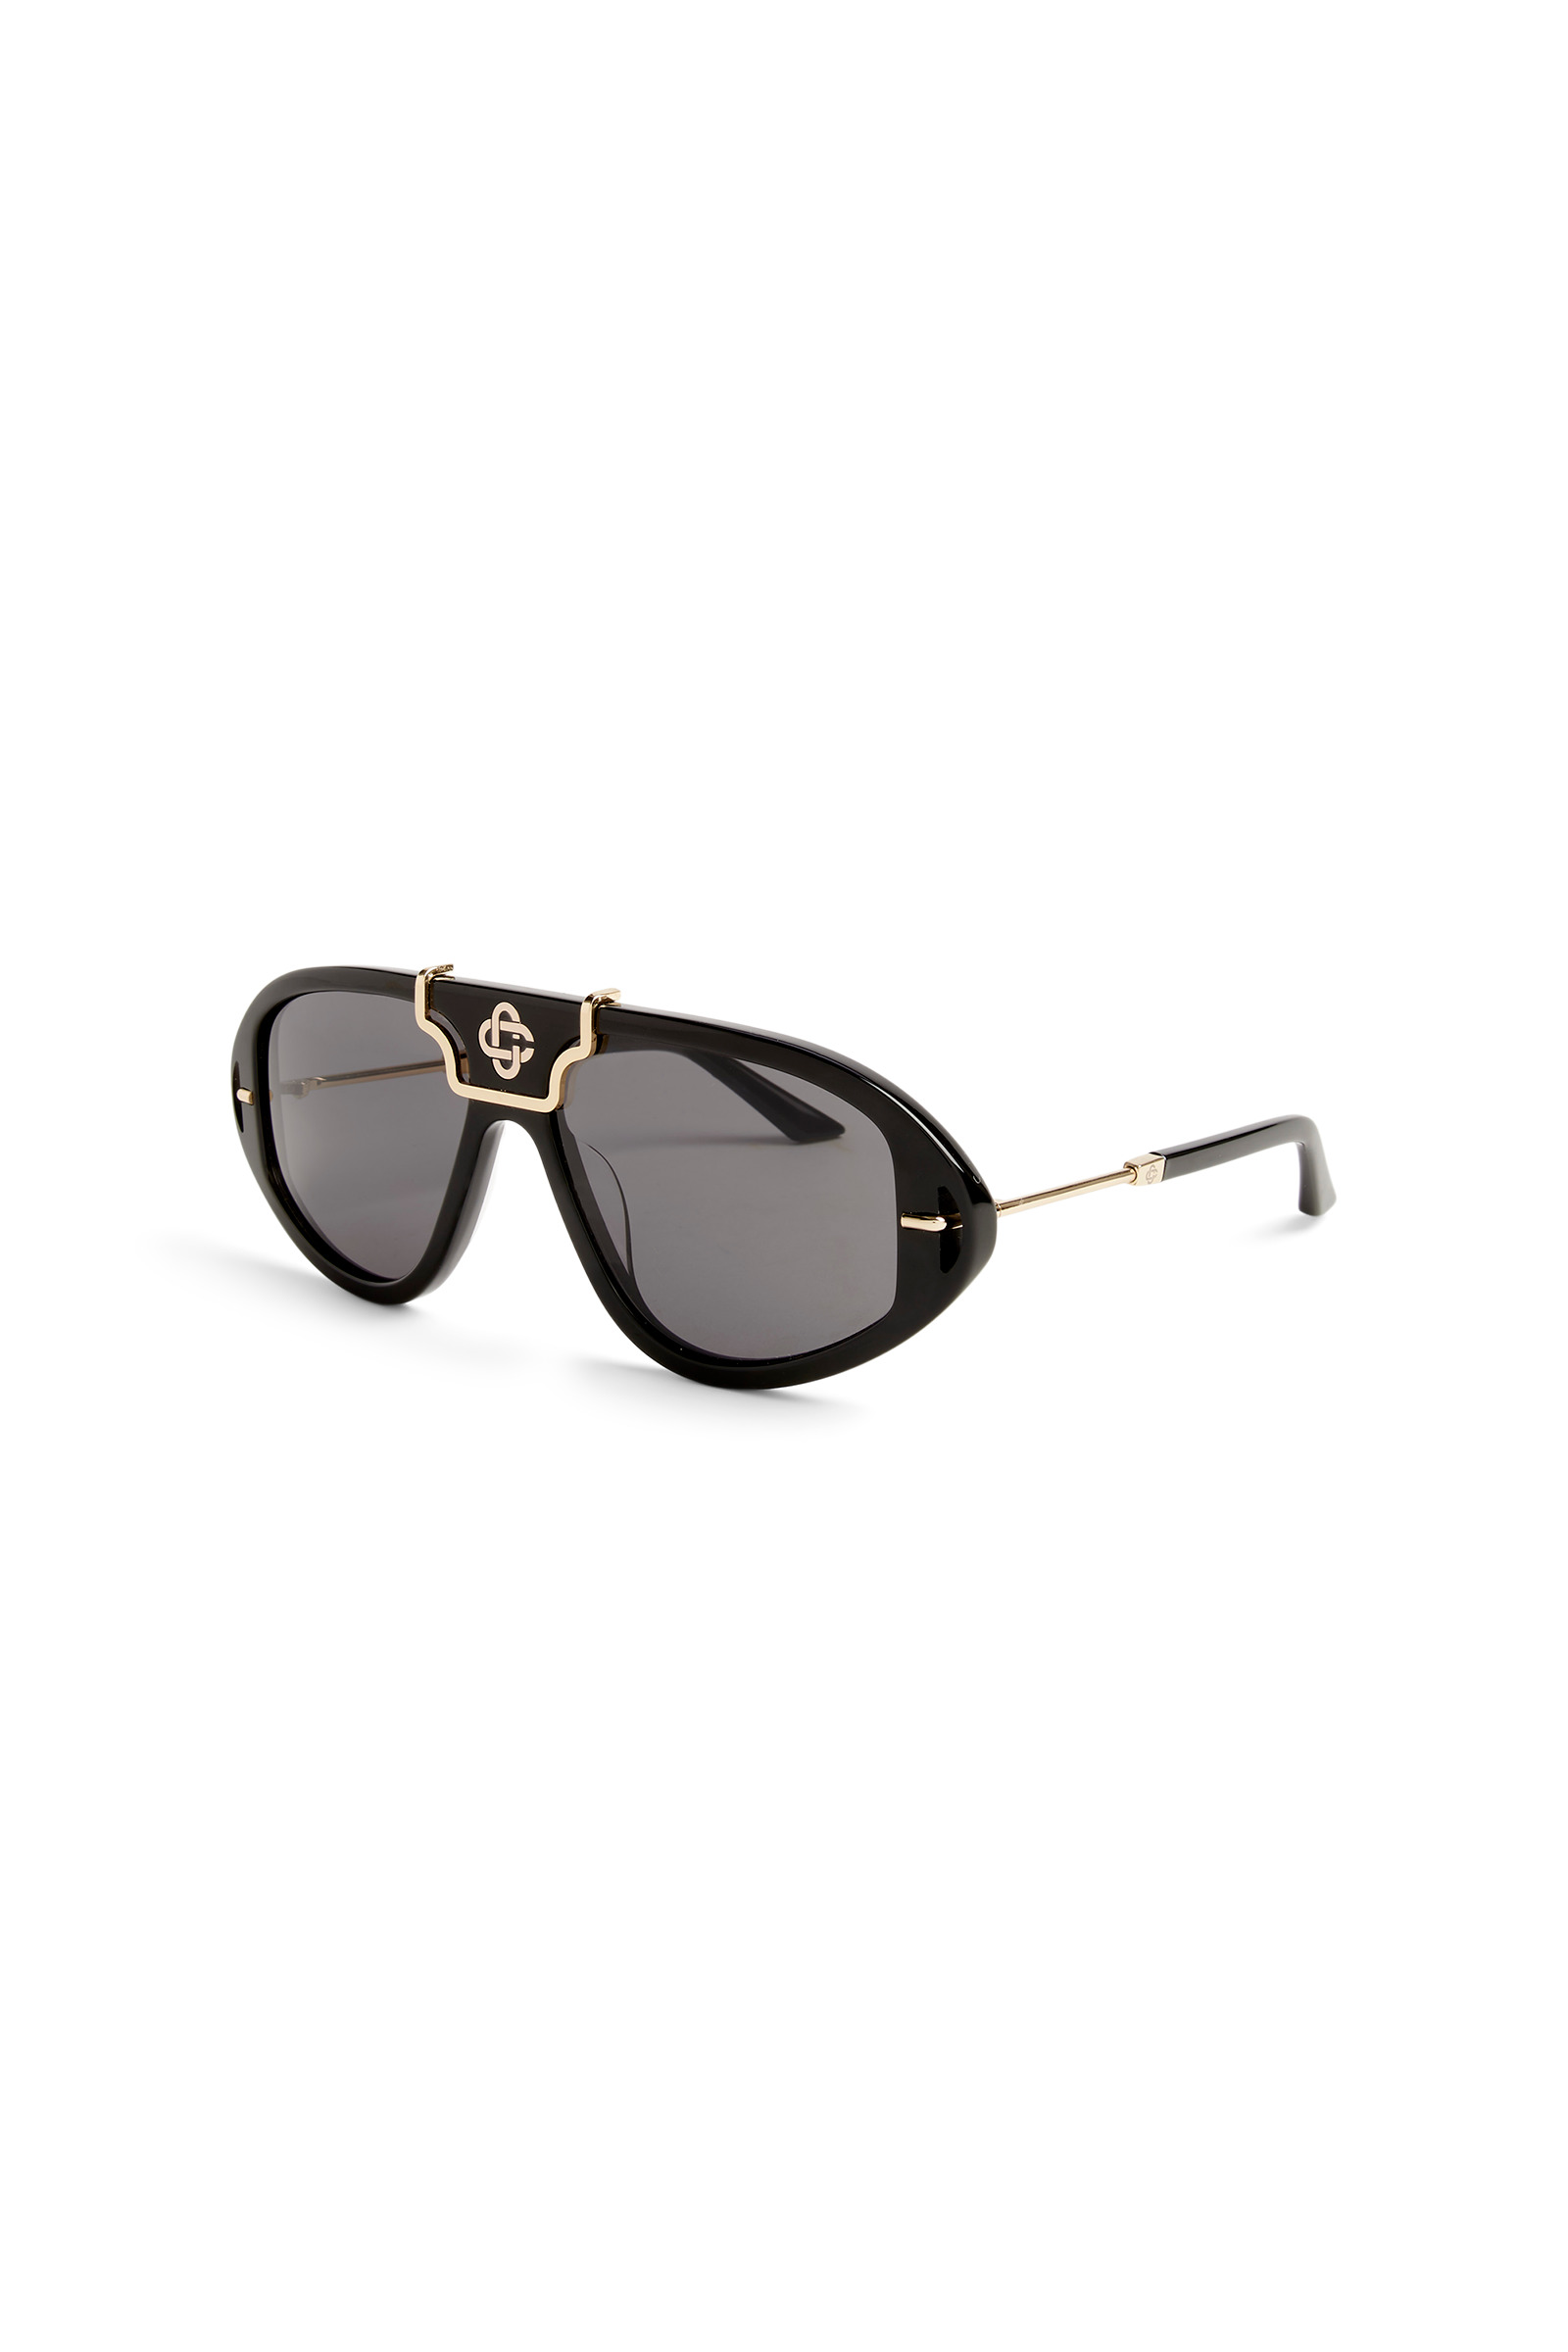 Black & Gold The Hacienda Sunglasses - 1